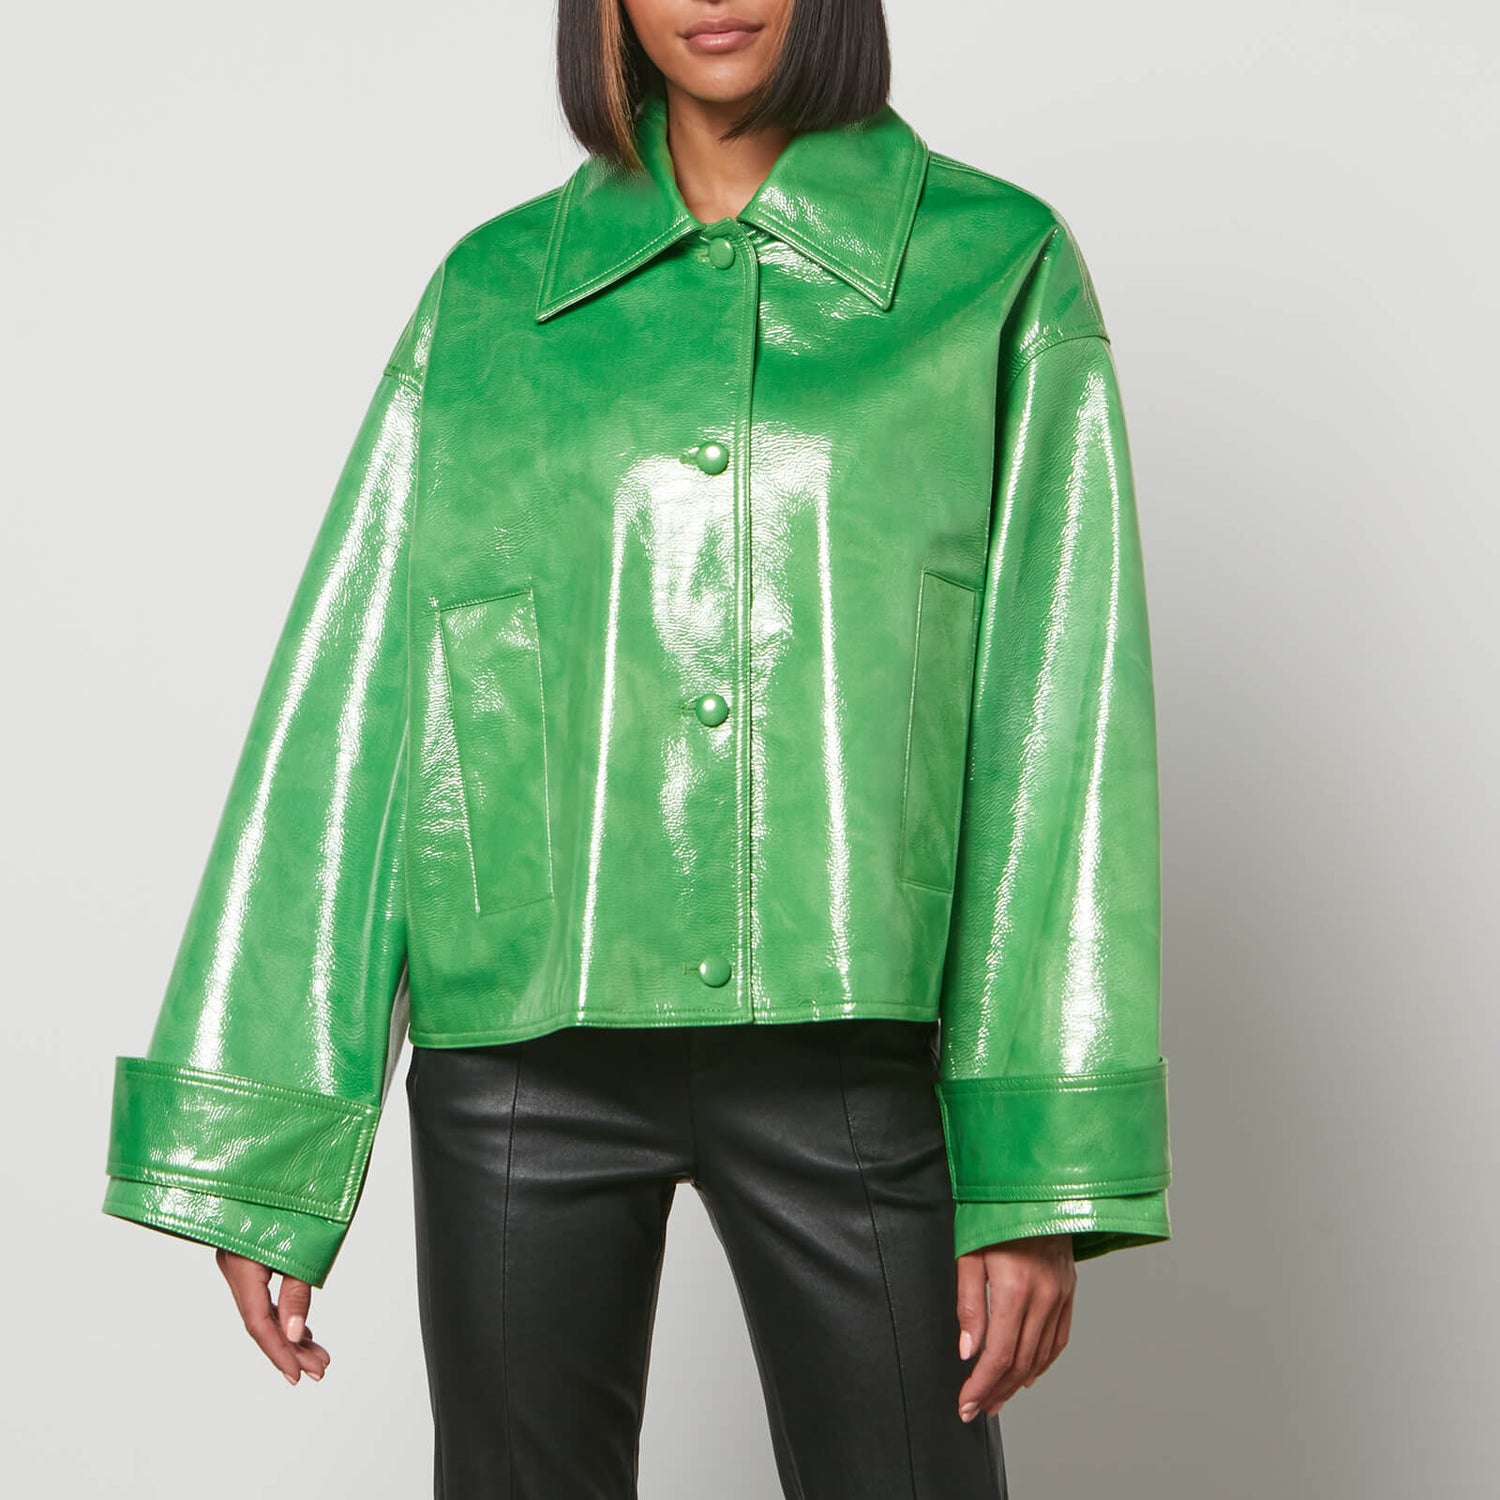 Stand Studio Women's Charleen Jacket - Bright Green - EU 34/UK 6